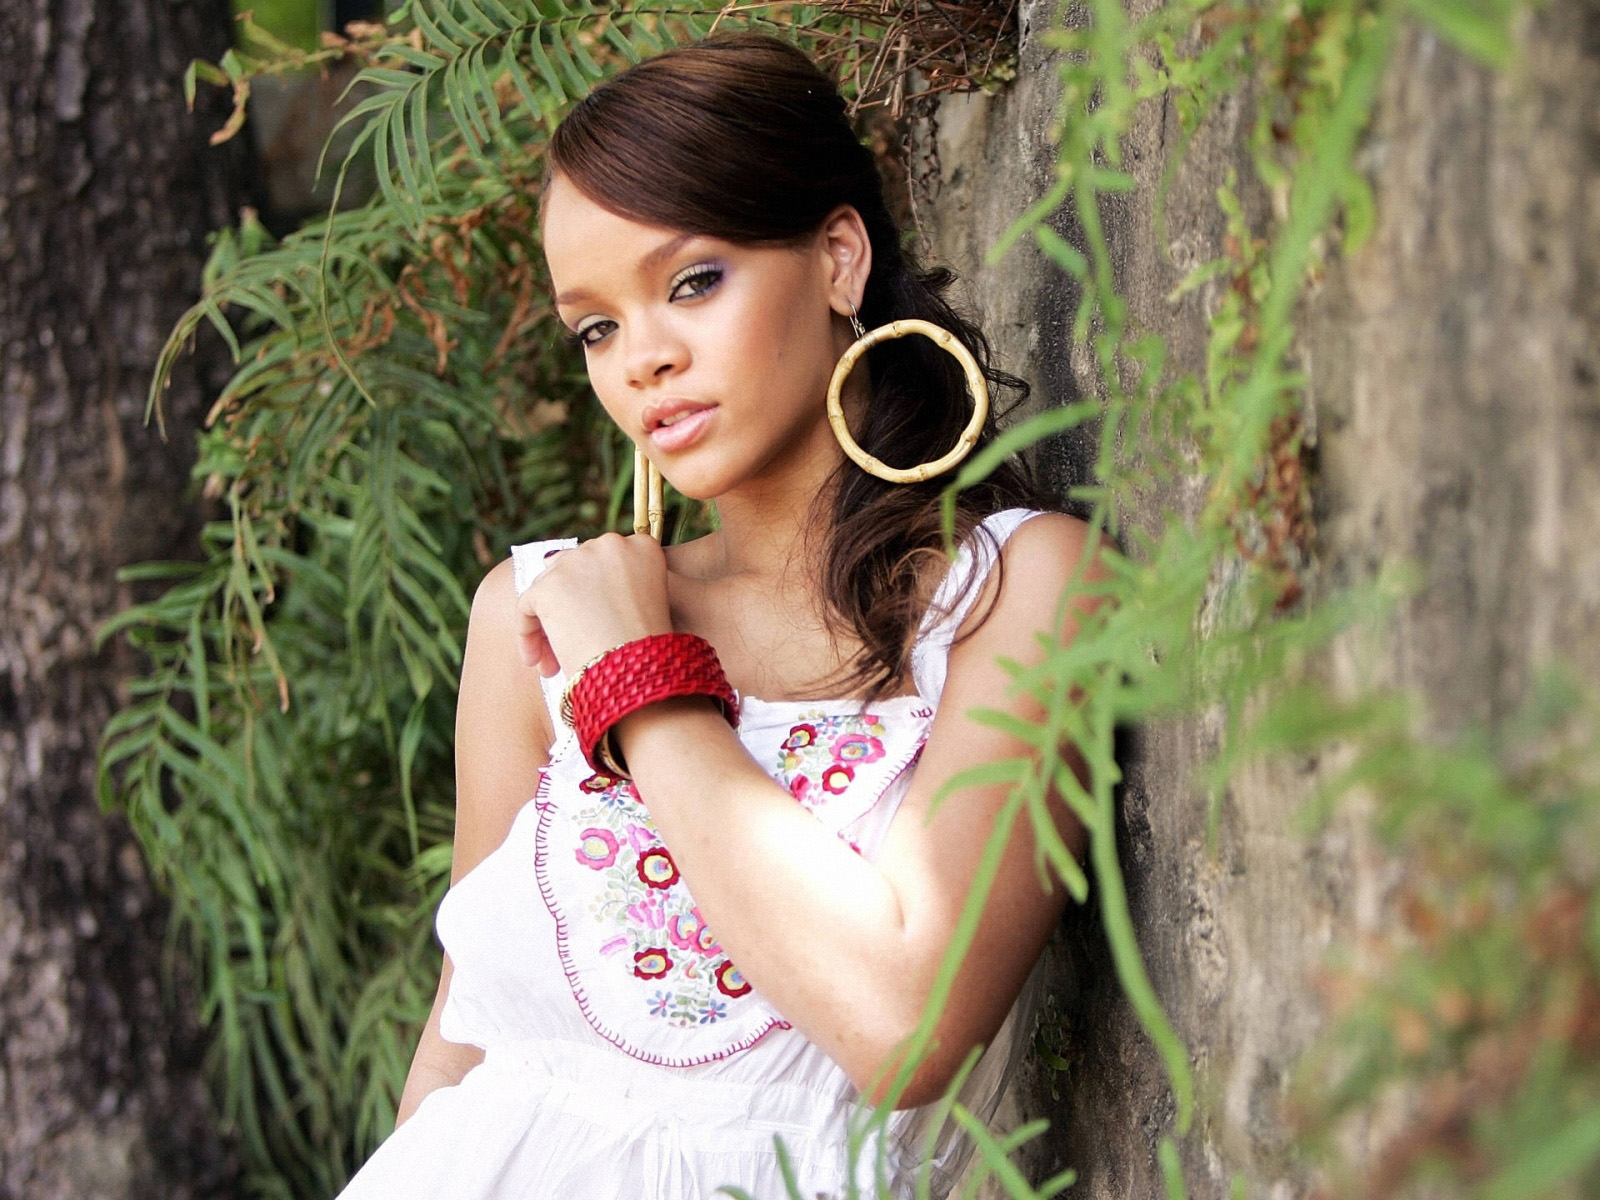 http://2.bp.blogspot.com/-qLaL7tMZb4I/Tyafzup5LUI/AAAAAAAAC4g/ukPs2DGXNXU/s1600/Best-Rihanna-Wallpapers-1.jpg